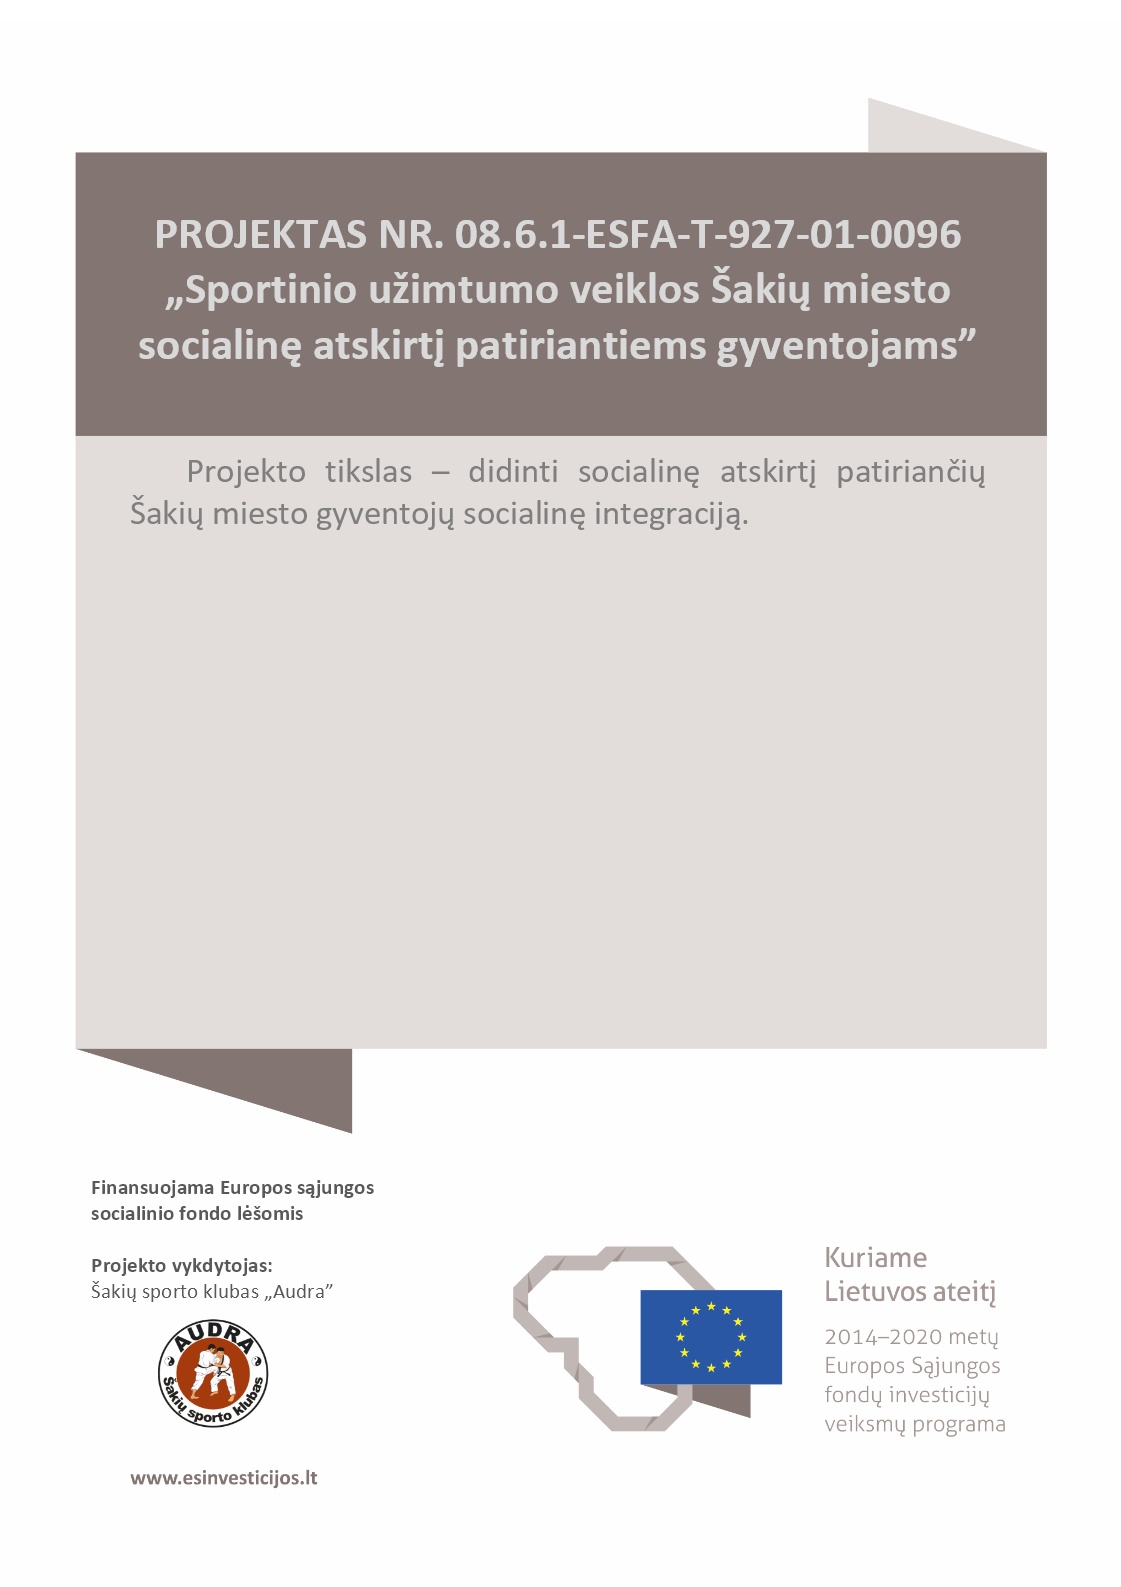 INFORMUOJAME, kad Šakių sporto klubas „Audra“ vykdo projektą bendrai finansuojamą Europos Sąjungos socialinio fondo lėšomis.